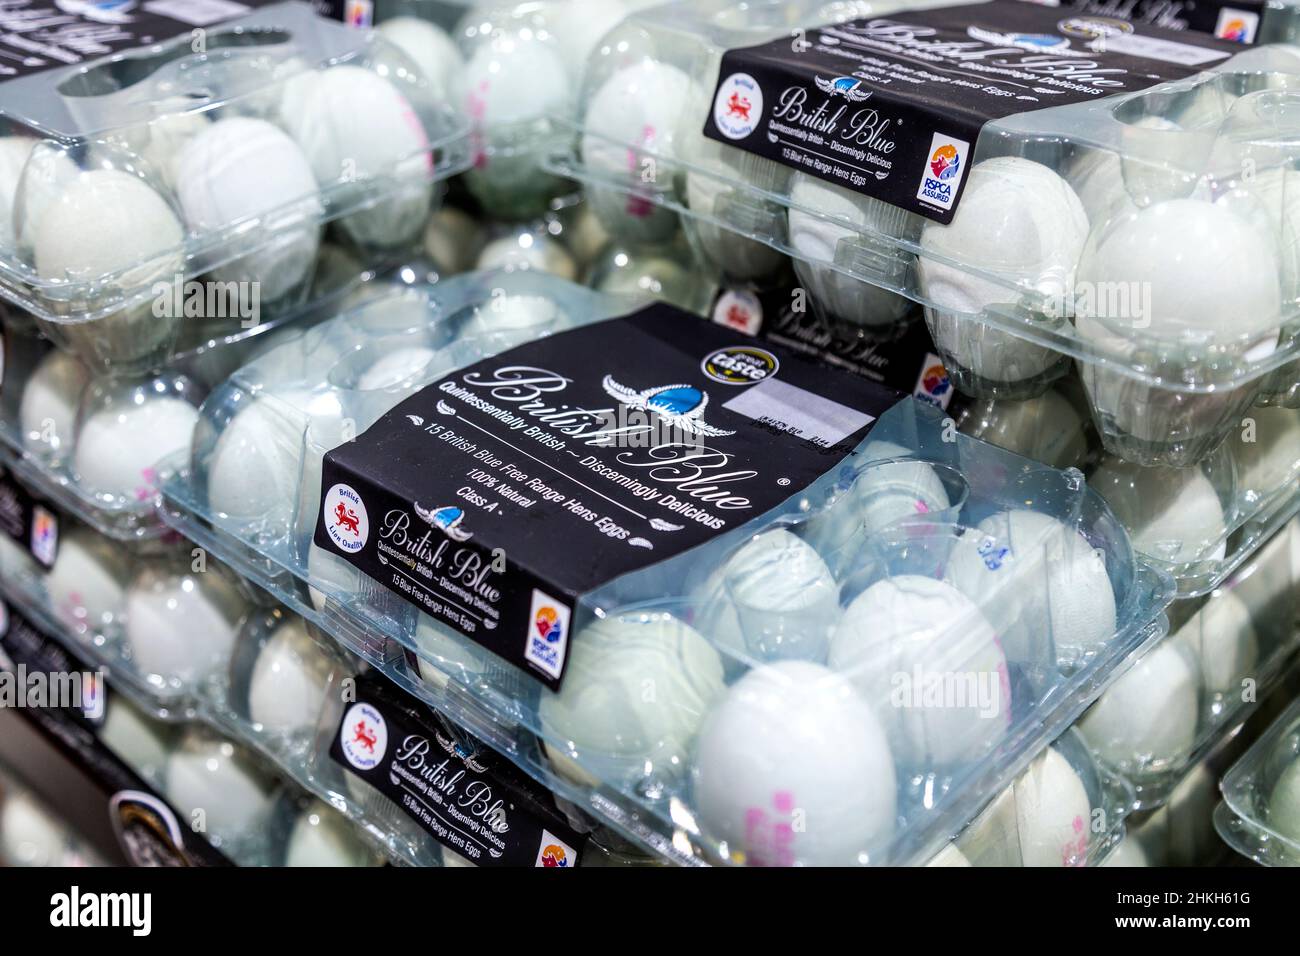 Emballage des œufs British Blue dans un supermarché Banque D'Images